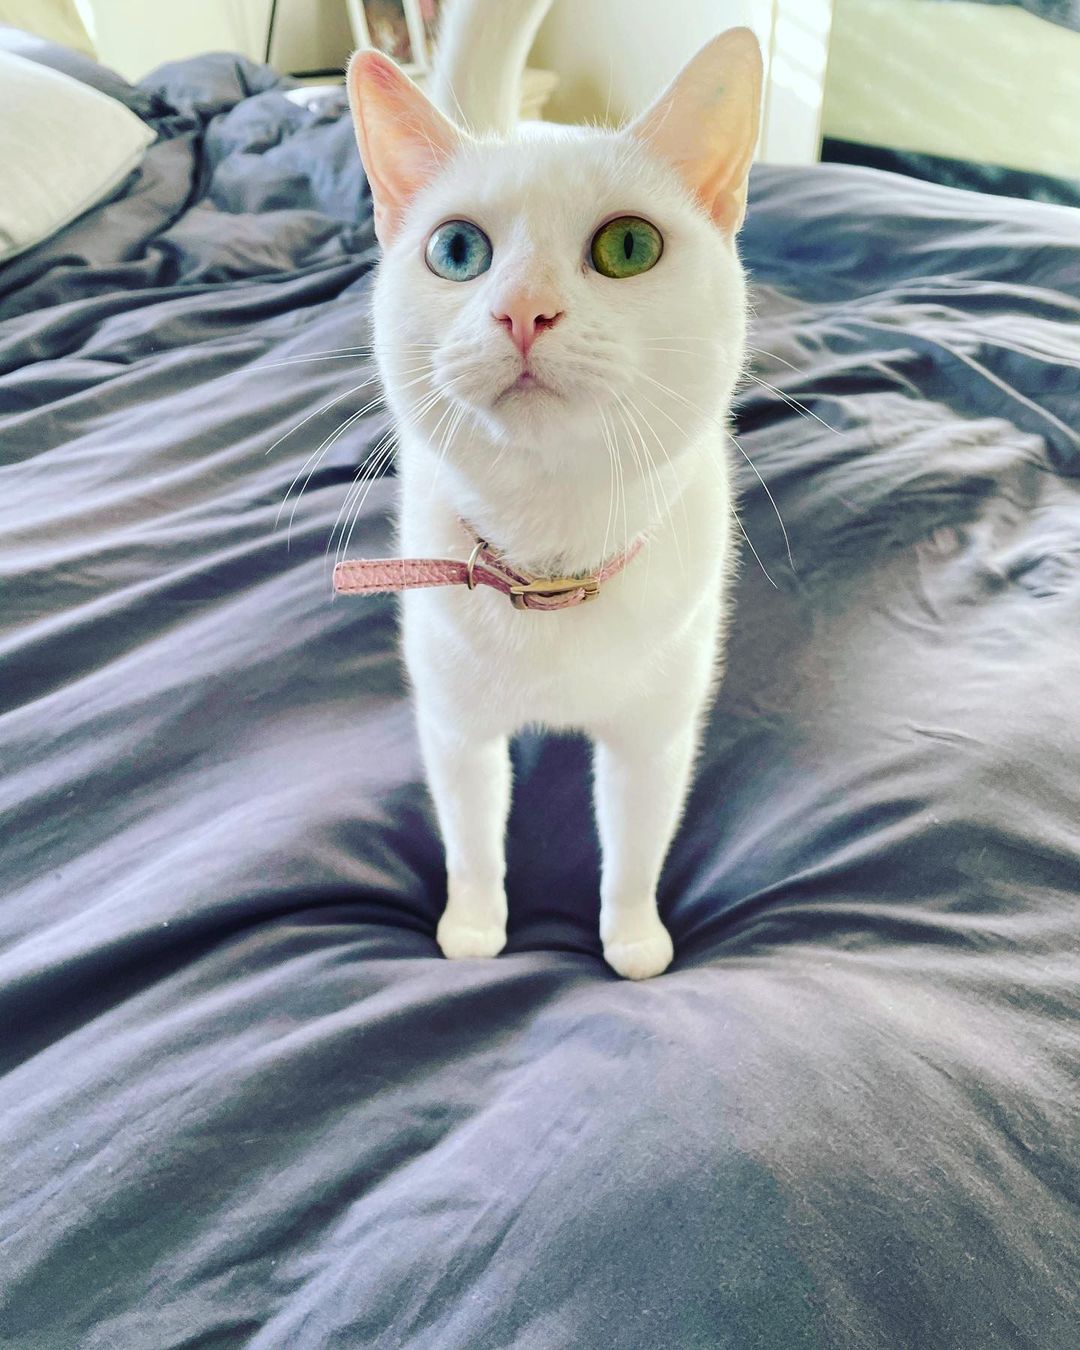 Marjorie the Heterochromia cat